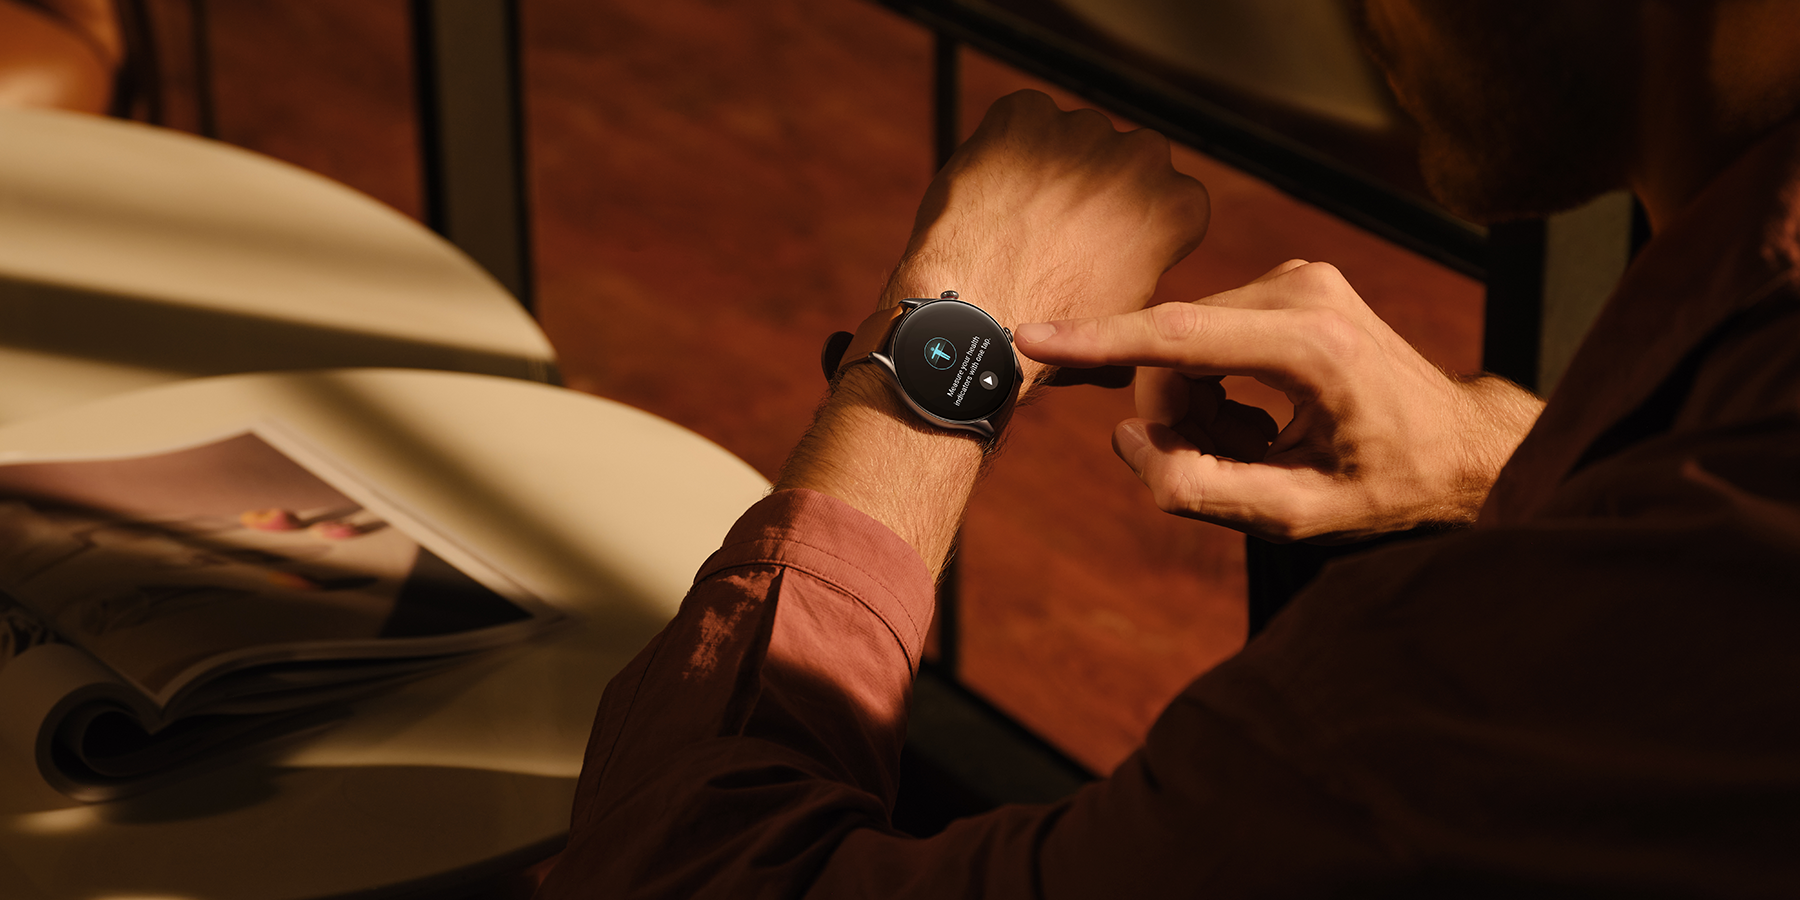 Smartwatch Amazfit GTR 3 Pro 1.45 caja 46mm de aleación de